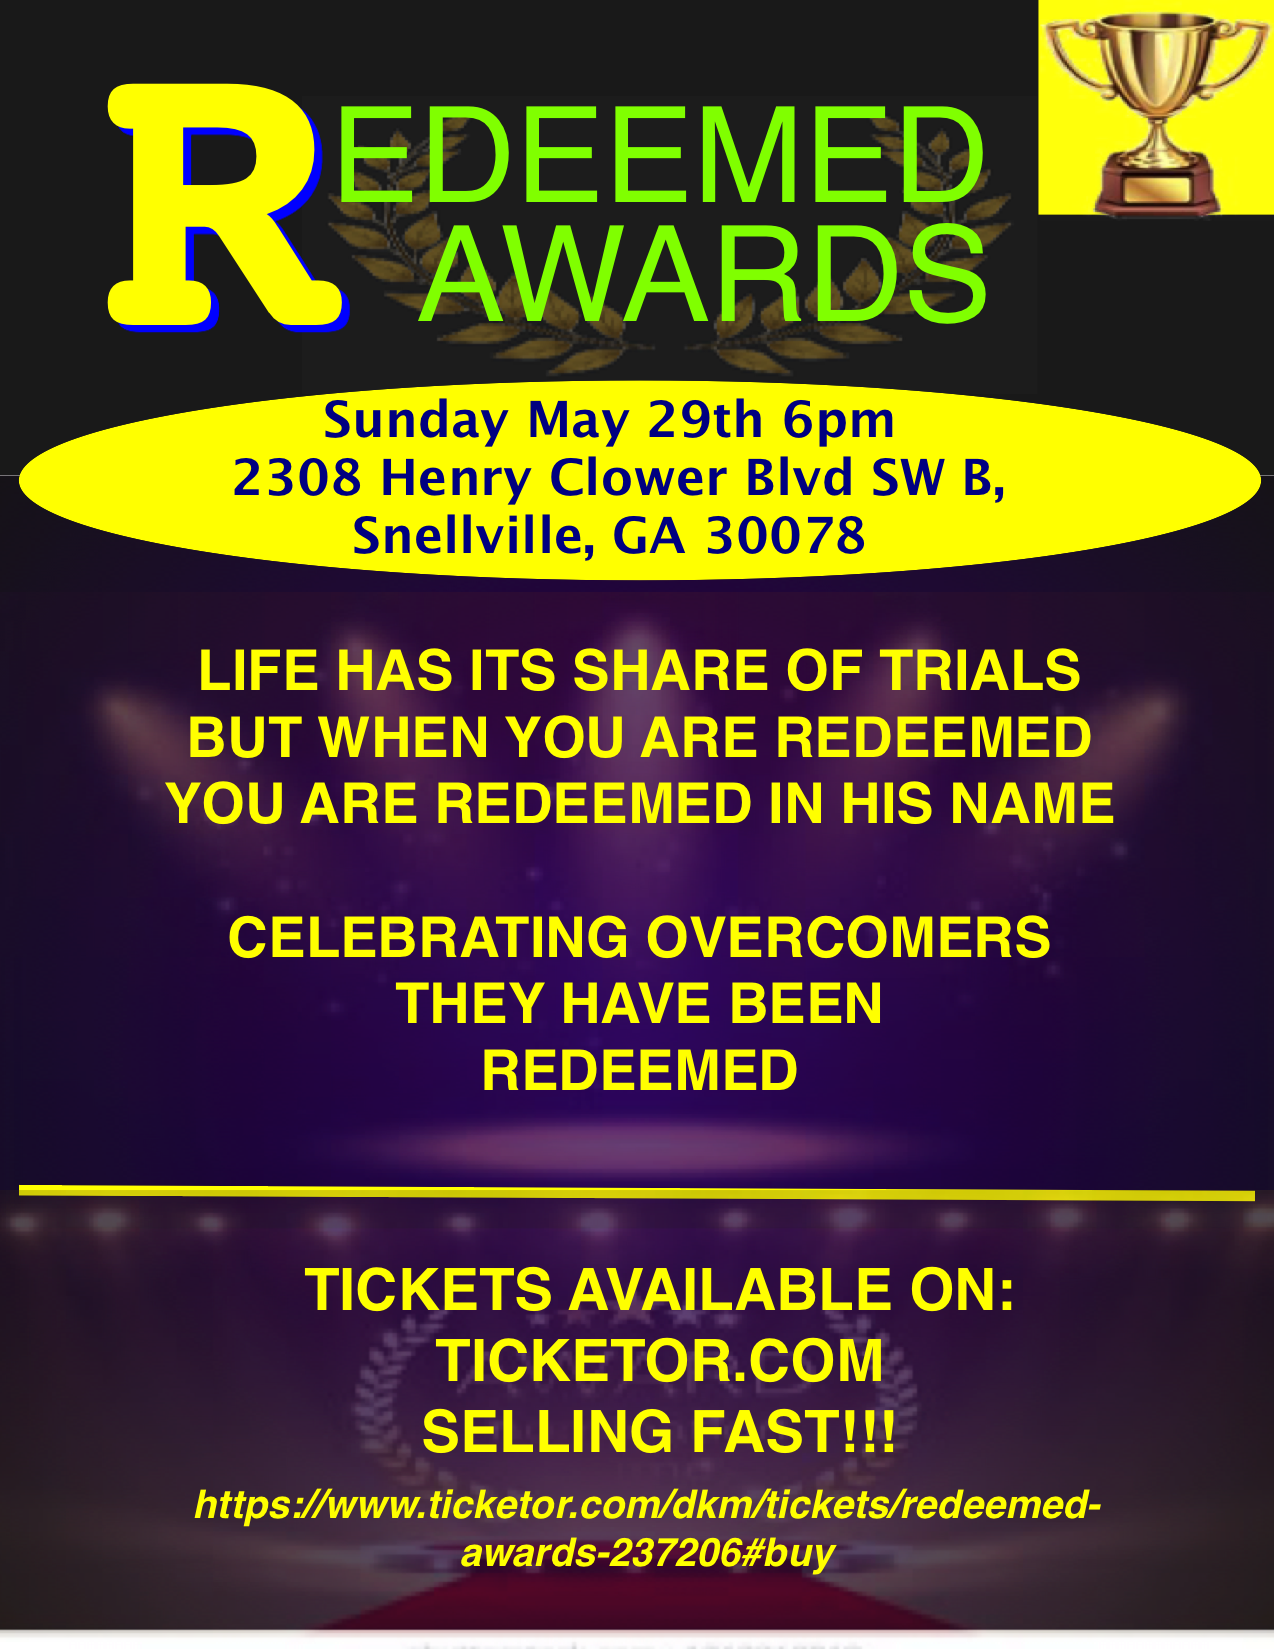 ReDeemed Awards WE are Overcomers on may. 29, 18:00@SENAY EVENT HALL - Compra entradas y obtén información enDKM MEDIA & ASSOCIATES 